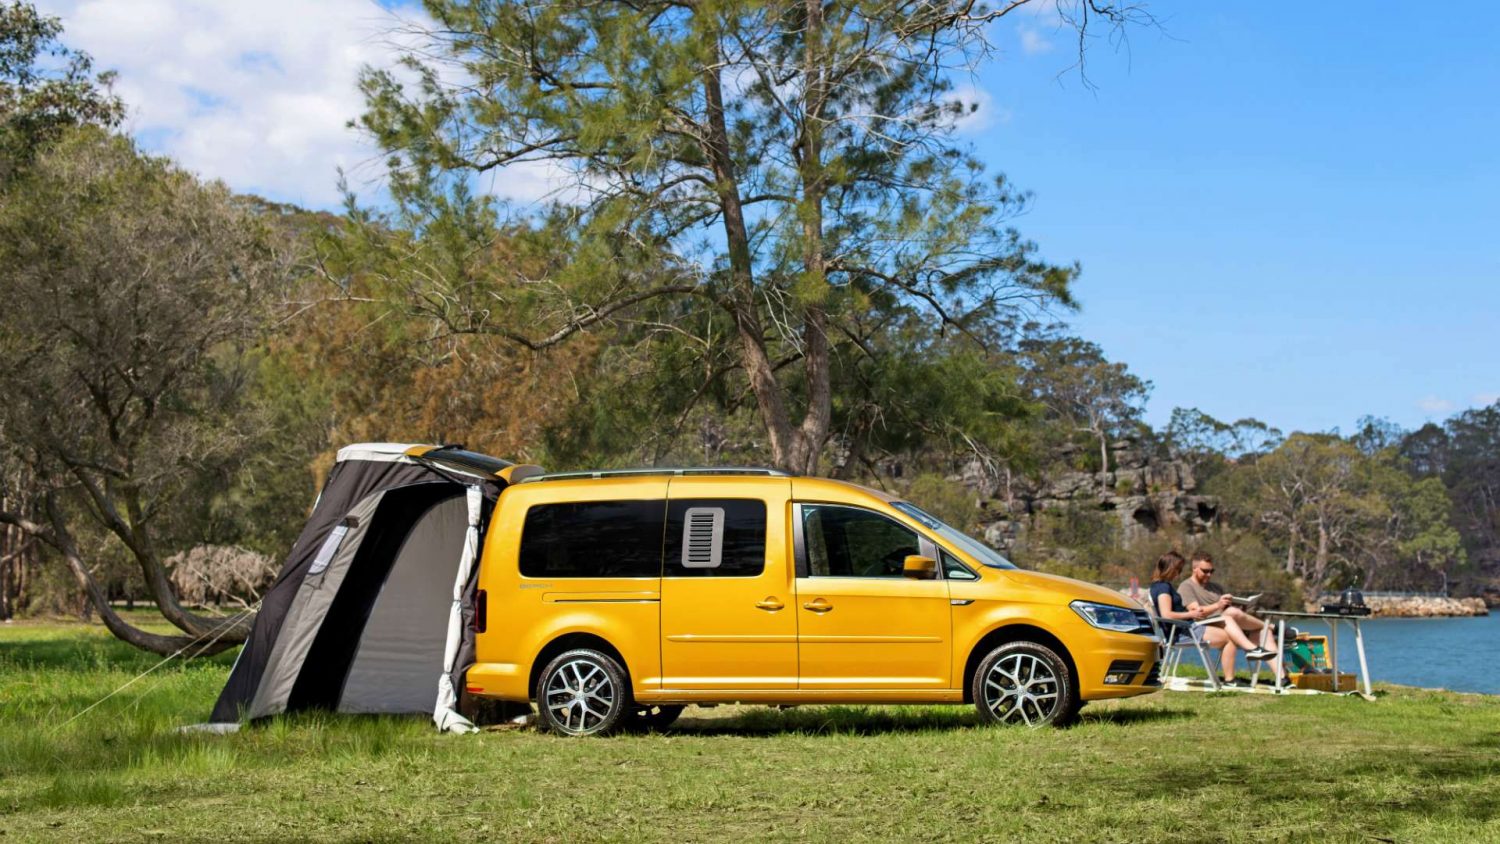 small van camper conversion